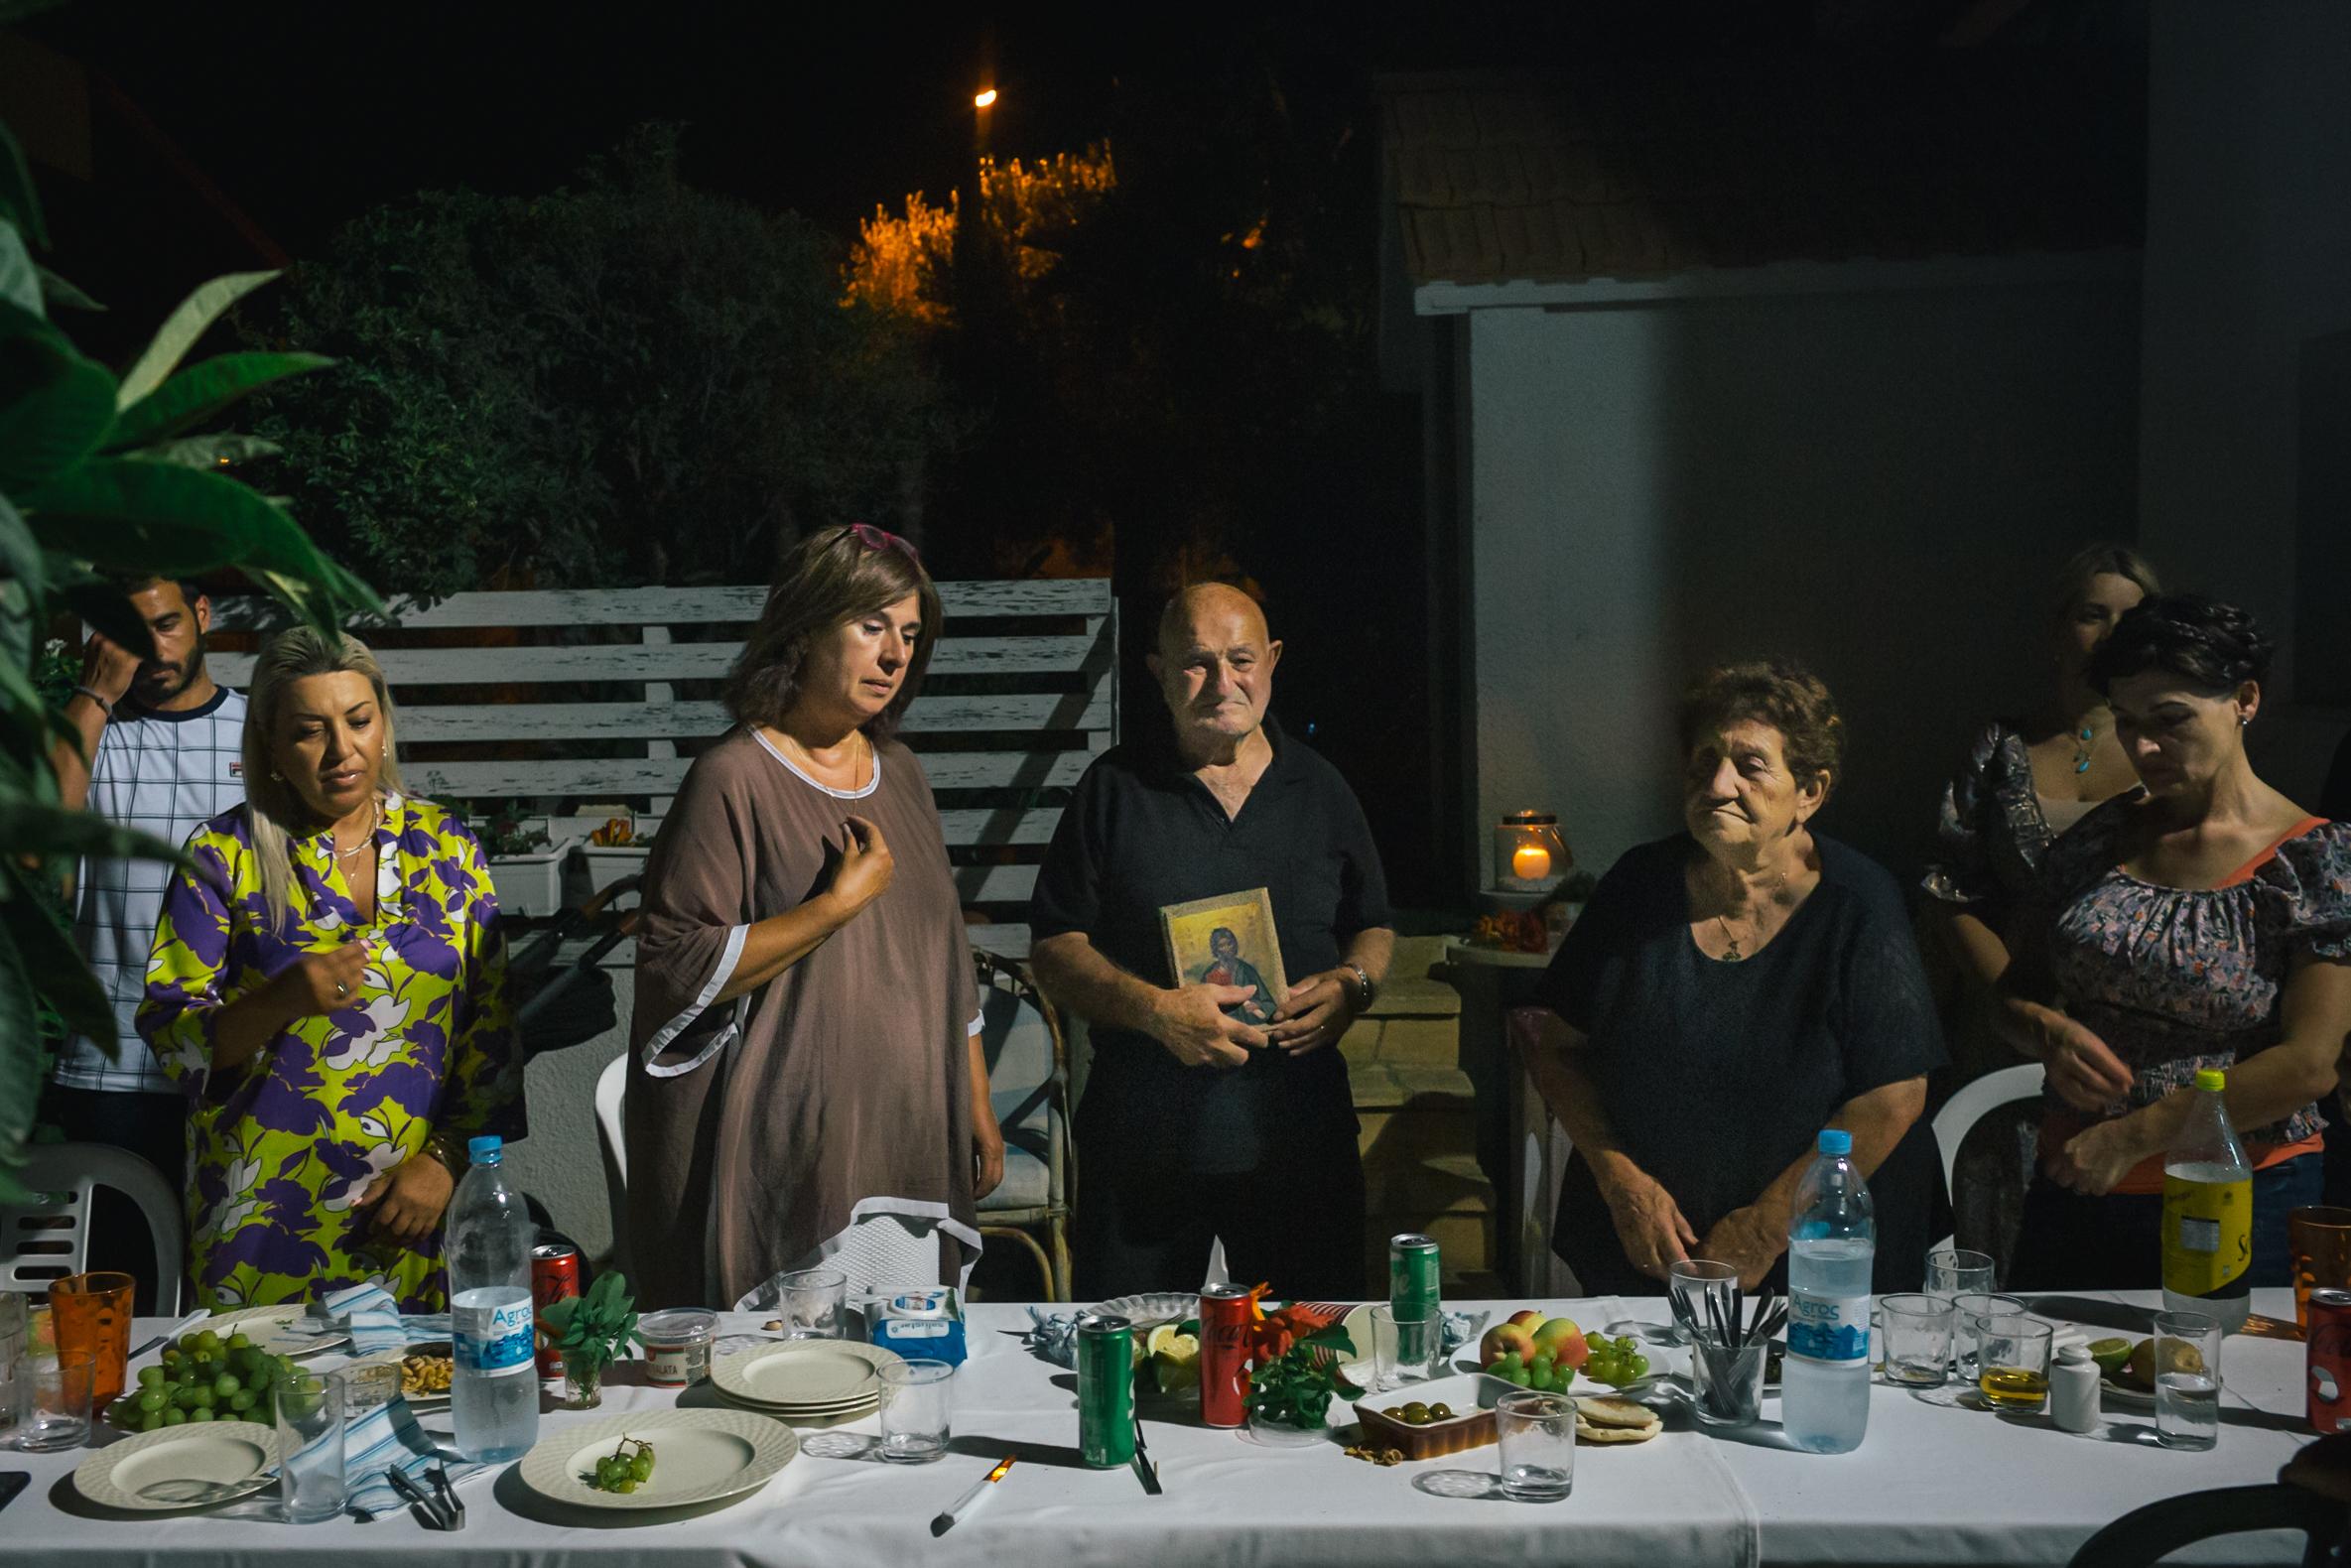 16/07/2021, Zypern: Tasoula Hadjitofi betet am Vorabend ihres ersten Übertrittes nach Nord-Zypern...